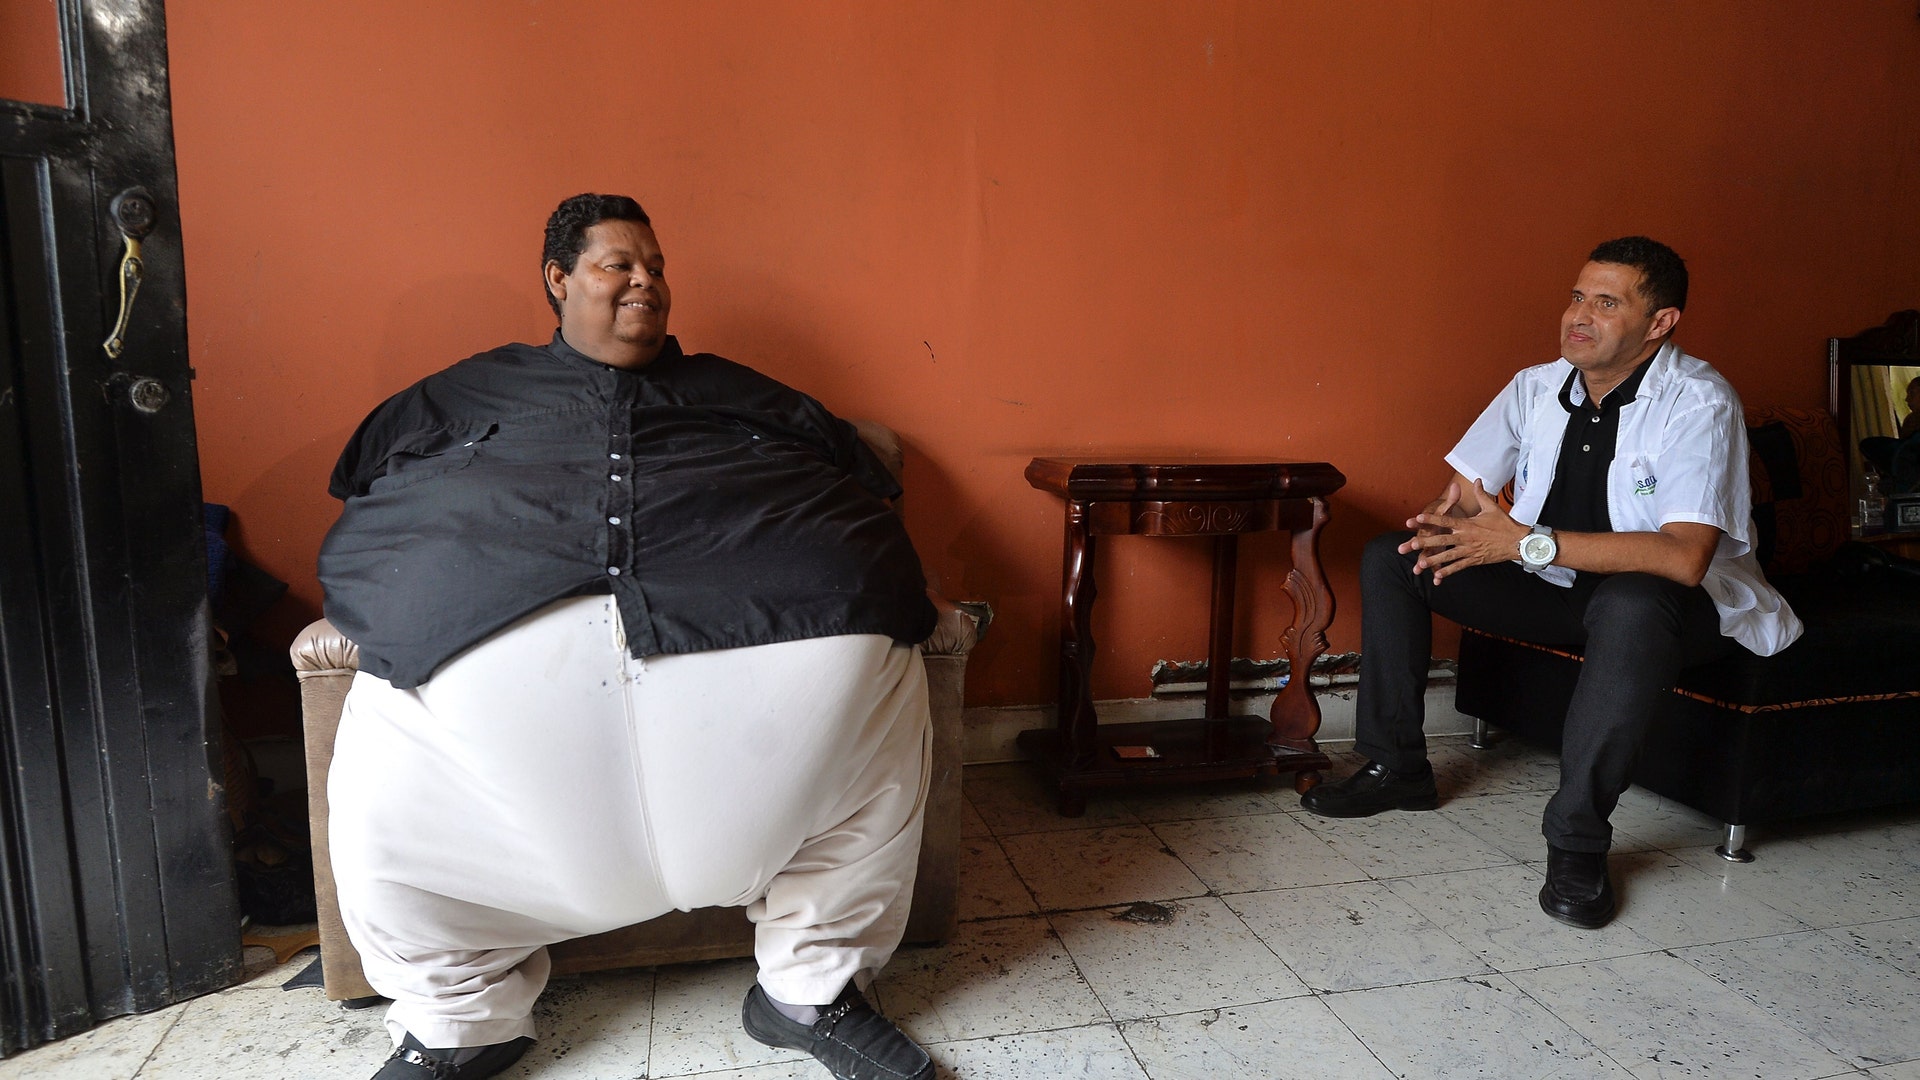 Сильно толстый человек. Хуан Педро Франко 600 кг.